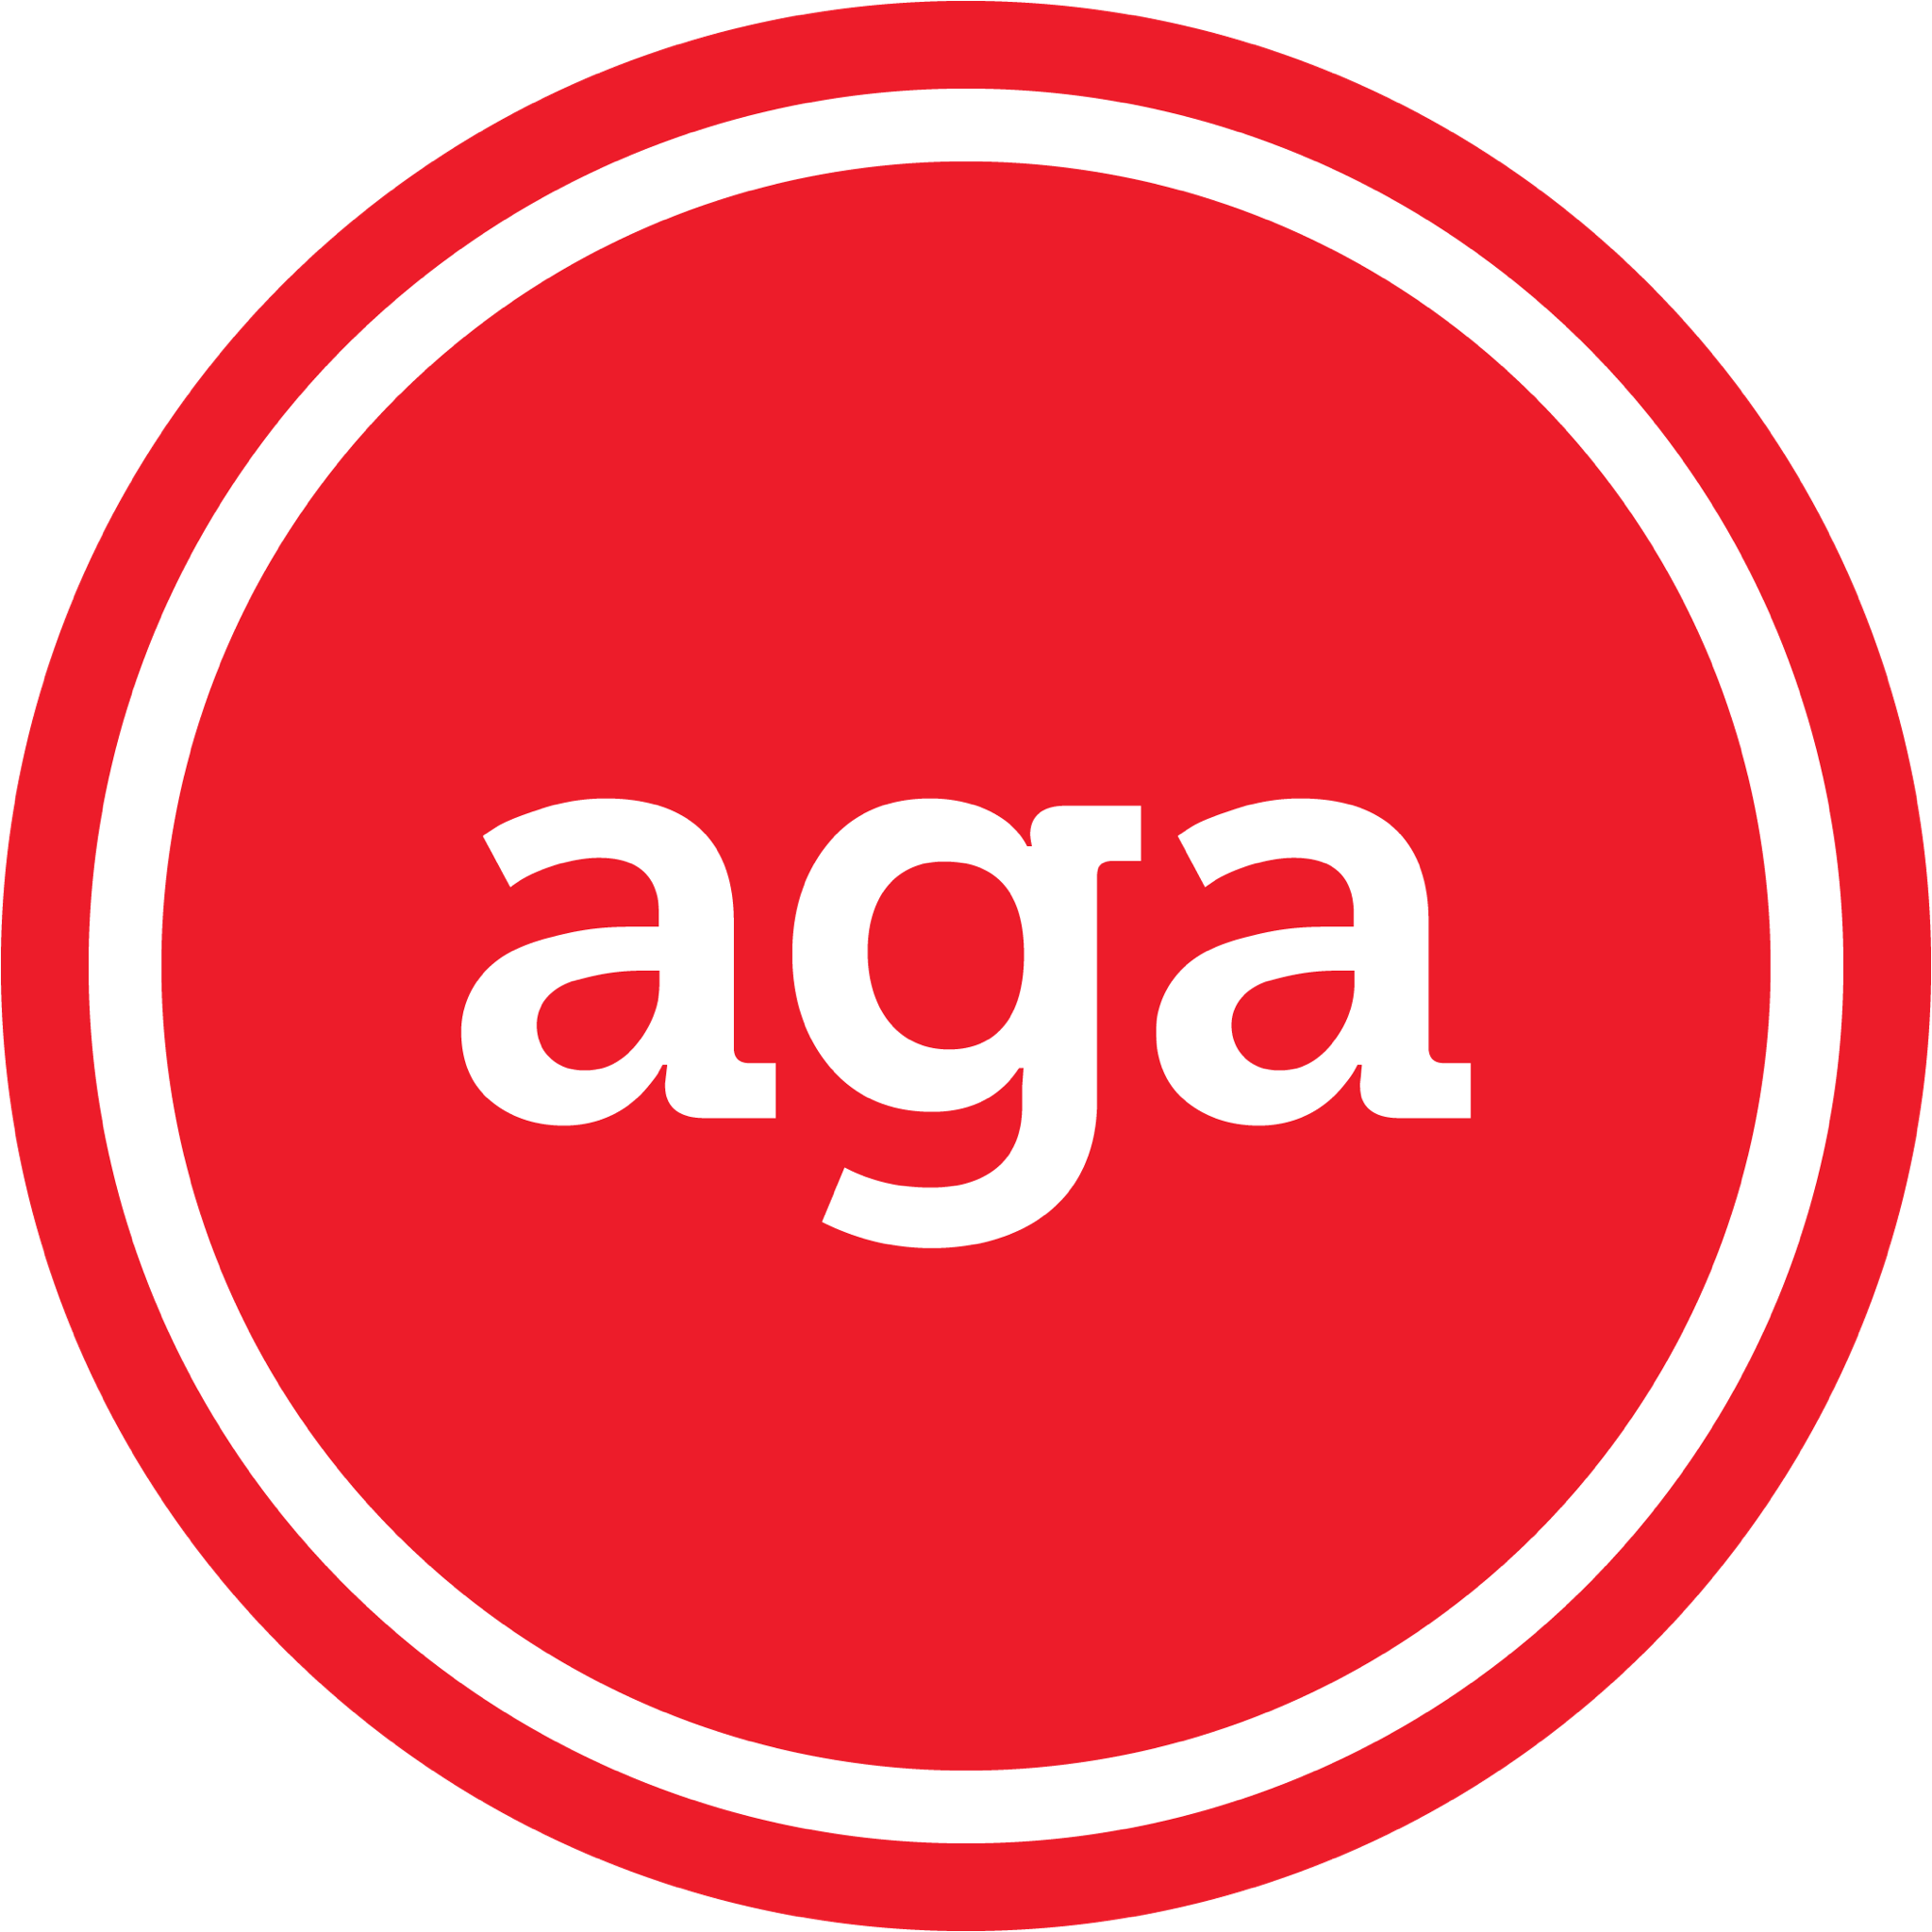 aga-logo-white-lettering.png